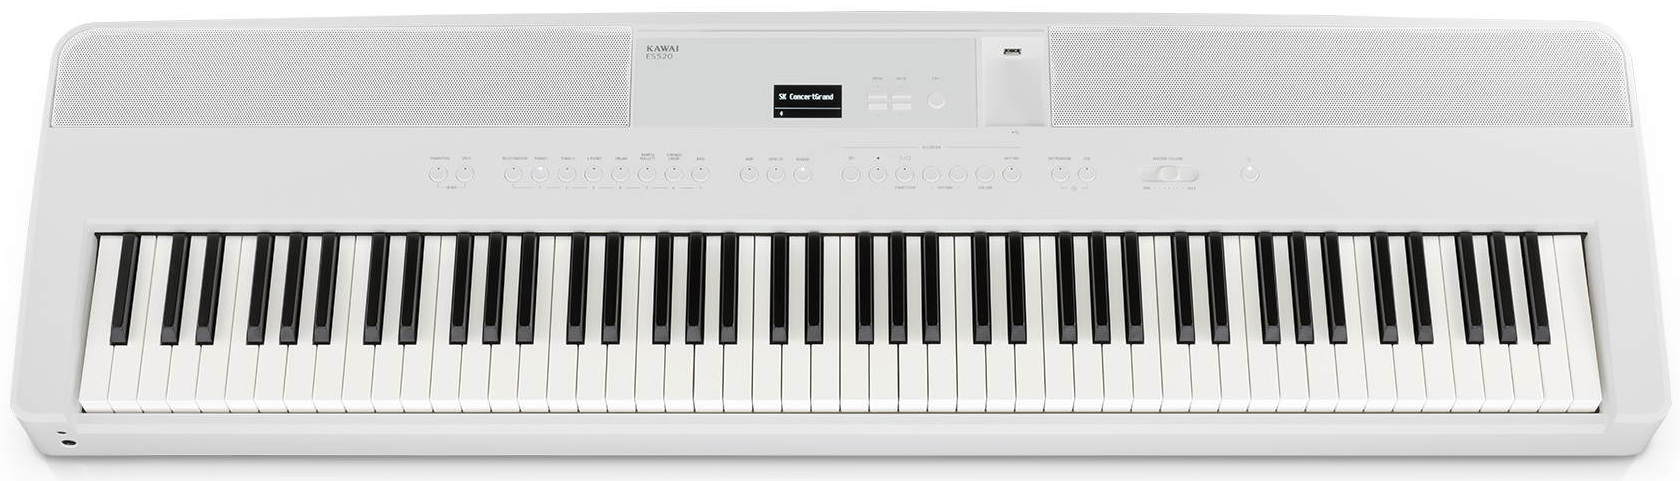 Цифровые пианино Kawai ES520W любимые мелодии и ритмы популярная музыка для фортепиано